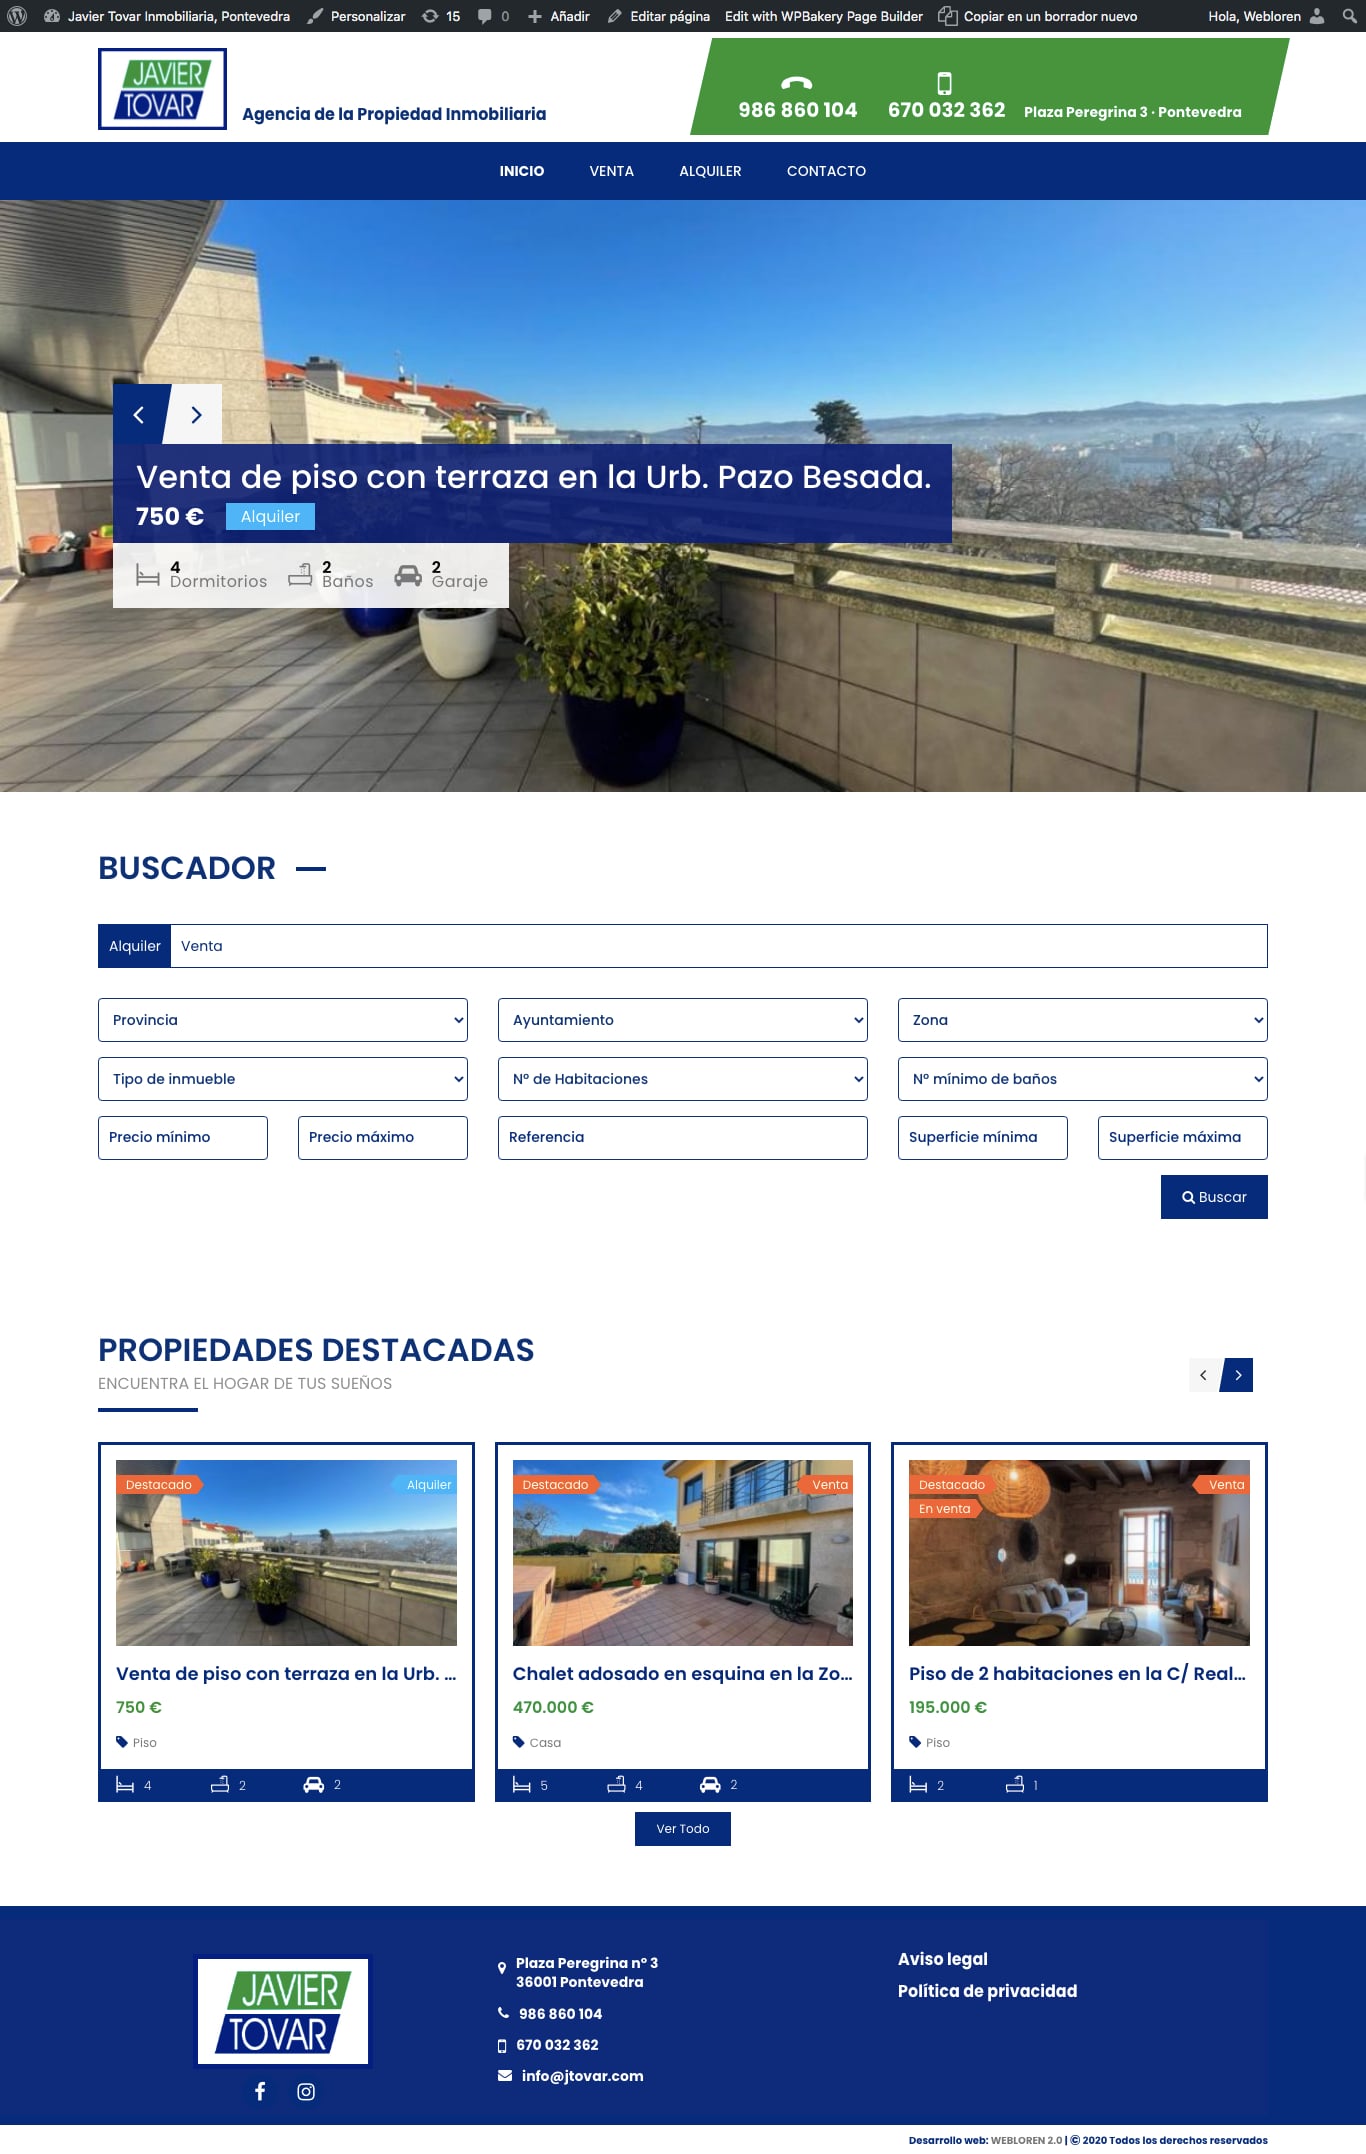 Captura web inmobiliaria Javier Tovar realizada por Webloren 2.0 Soluciones Gráficas